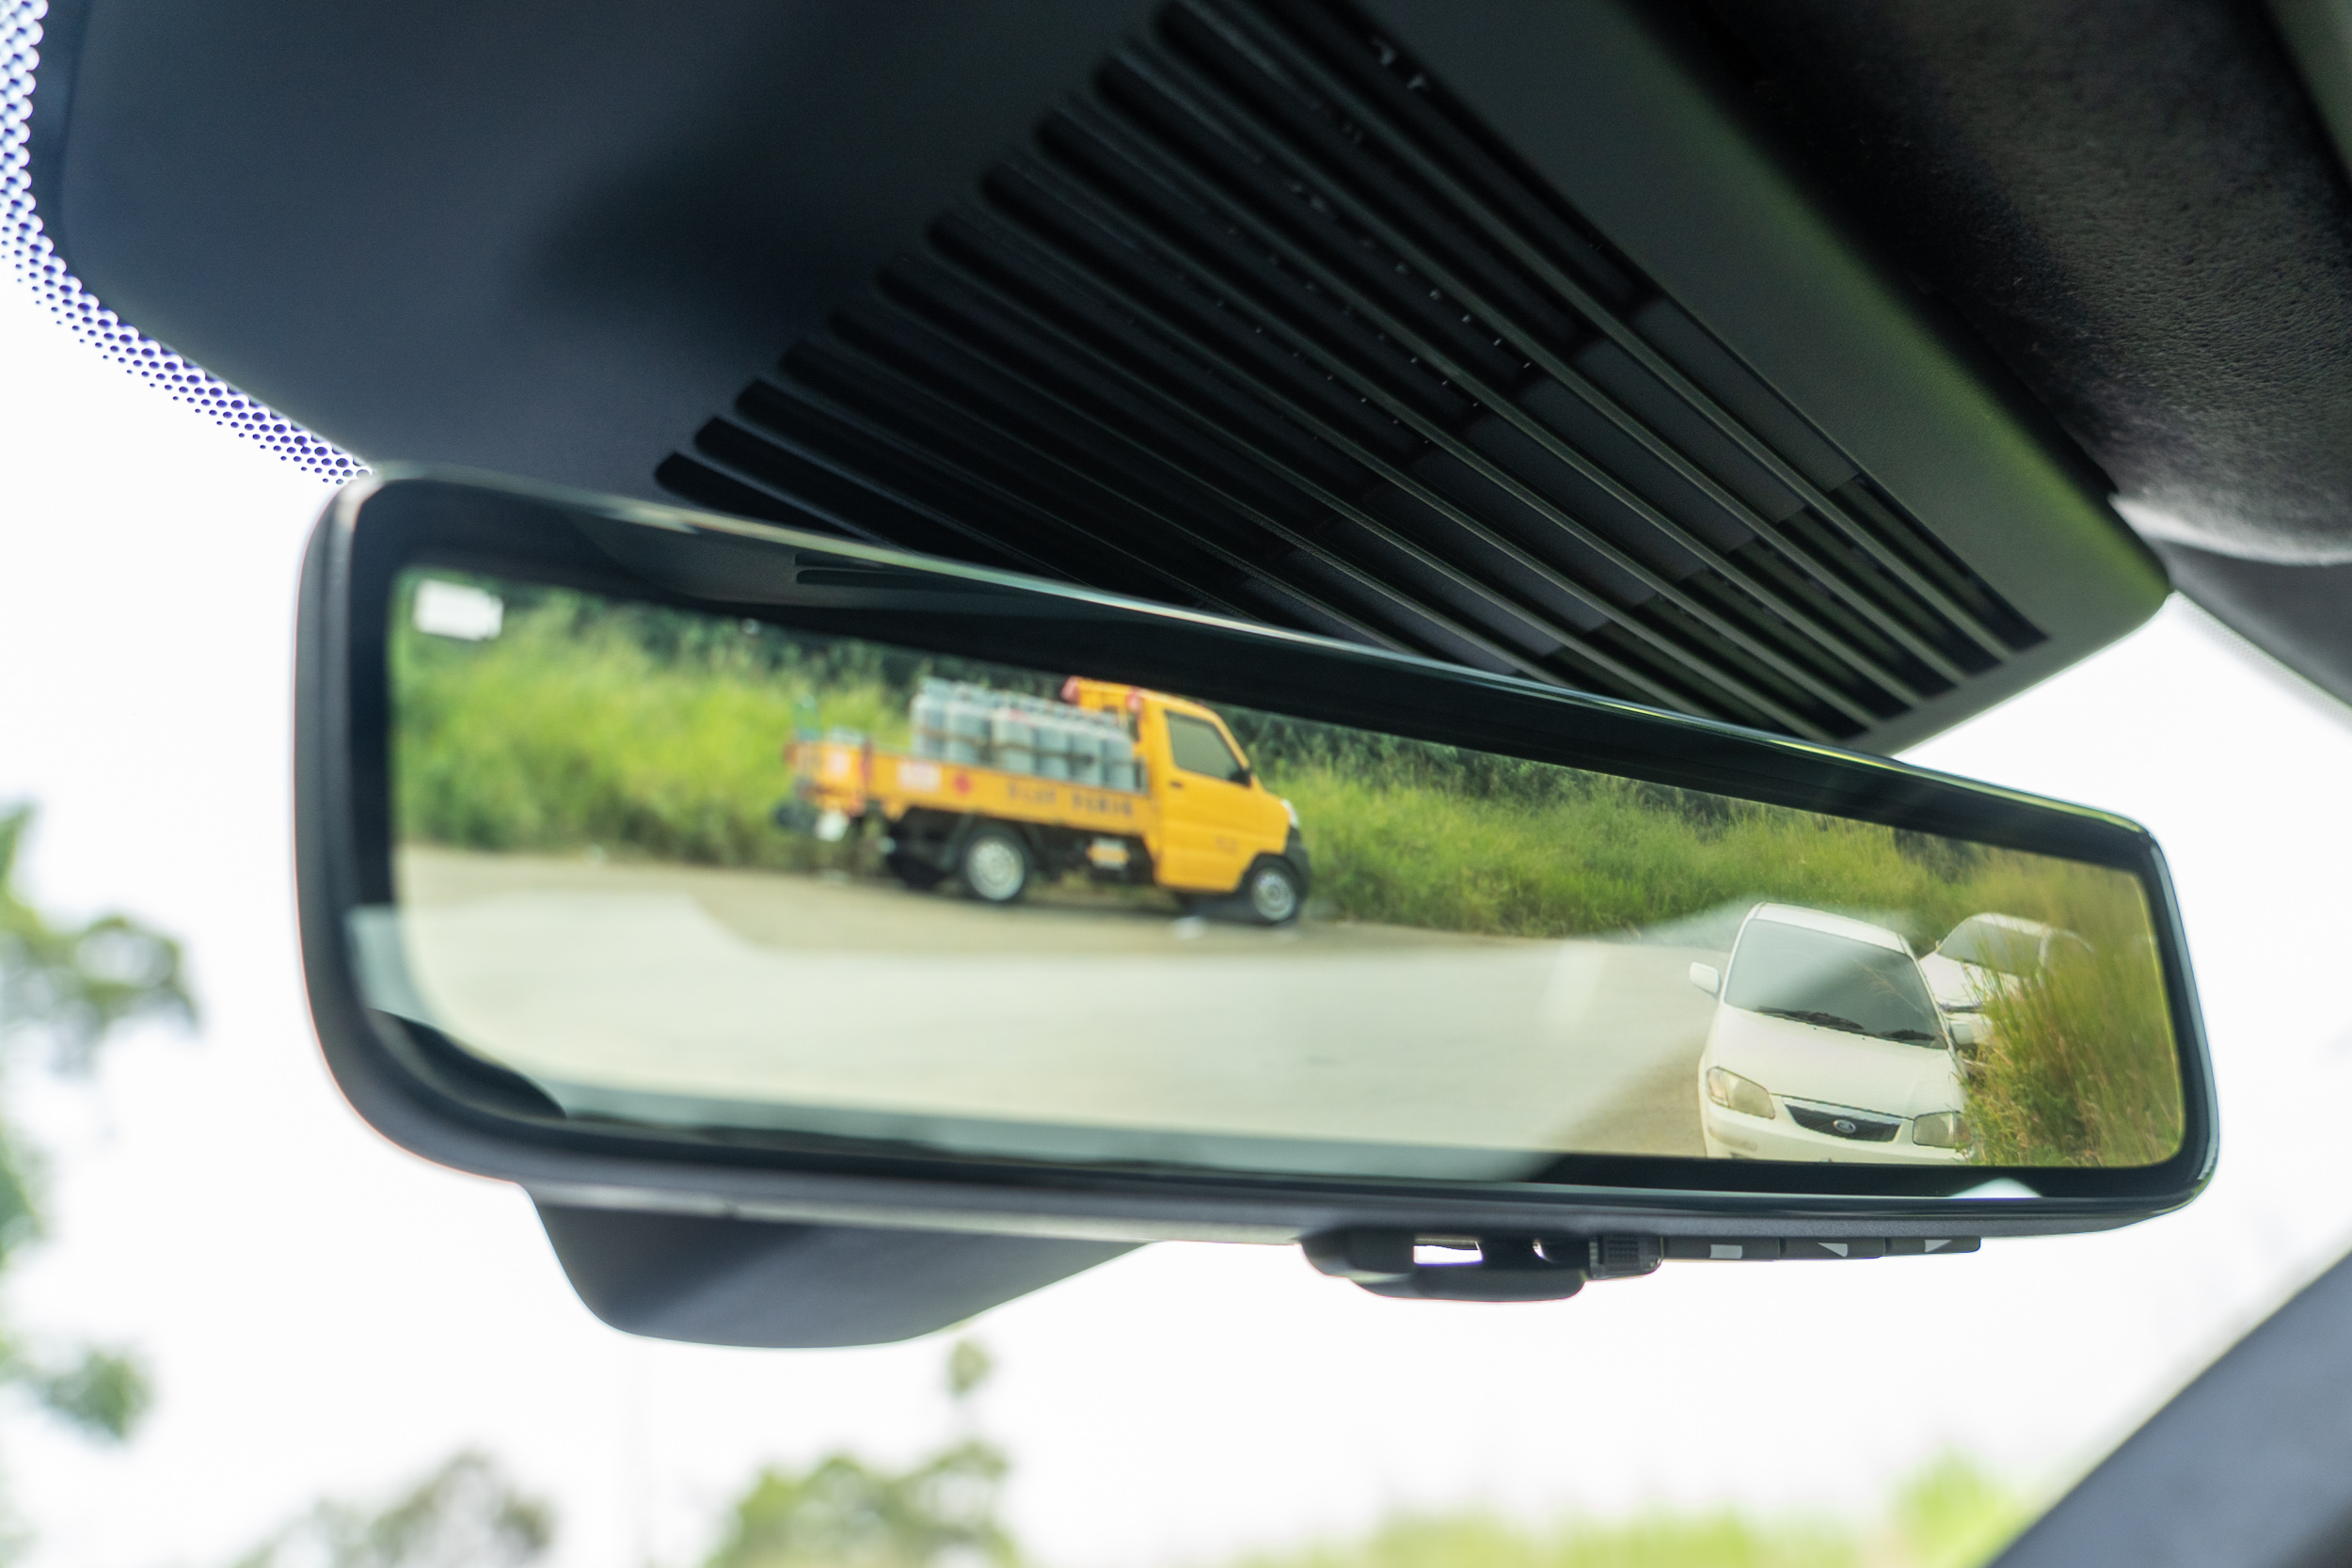 ClearSight 電子車內後視鏡為車系標準配備。 